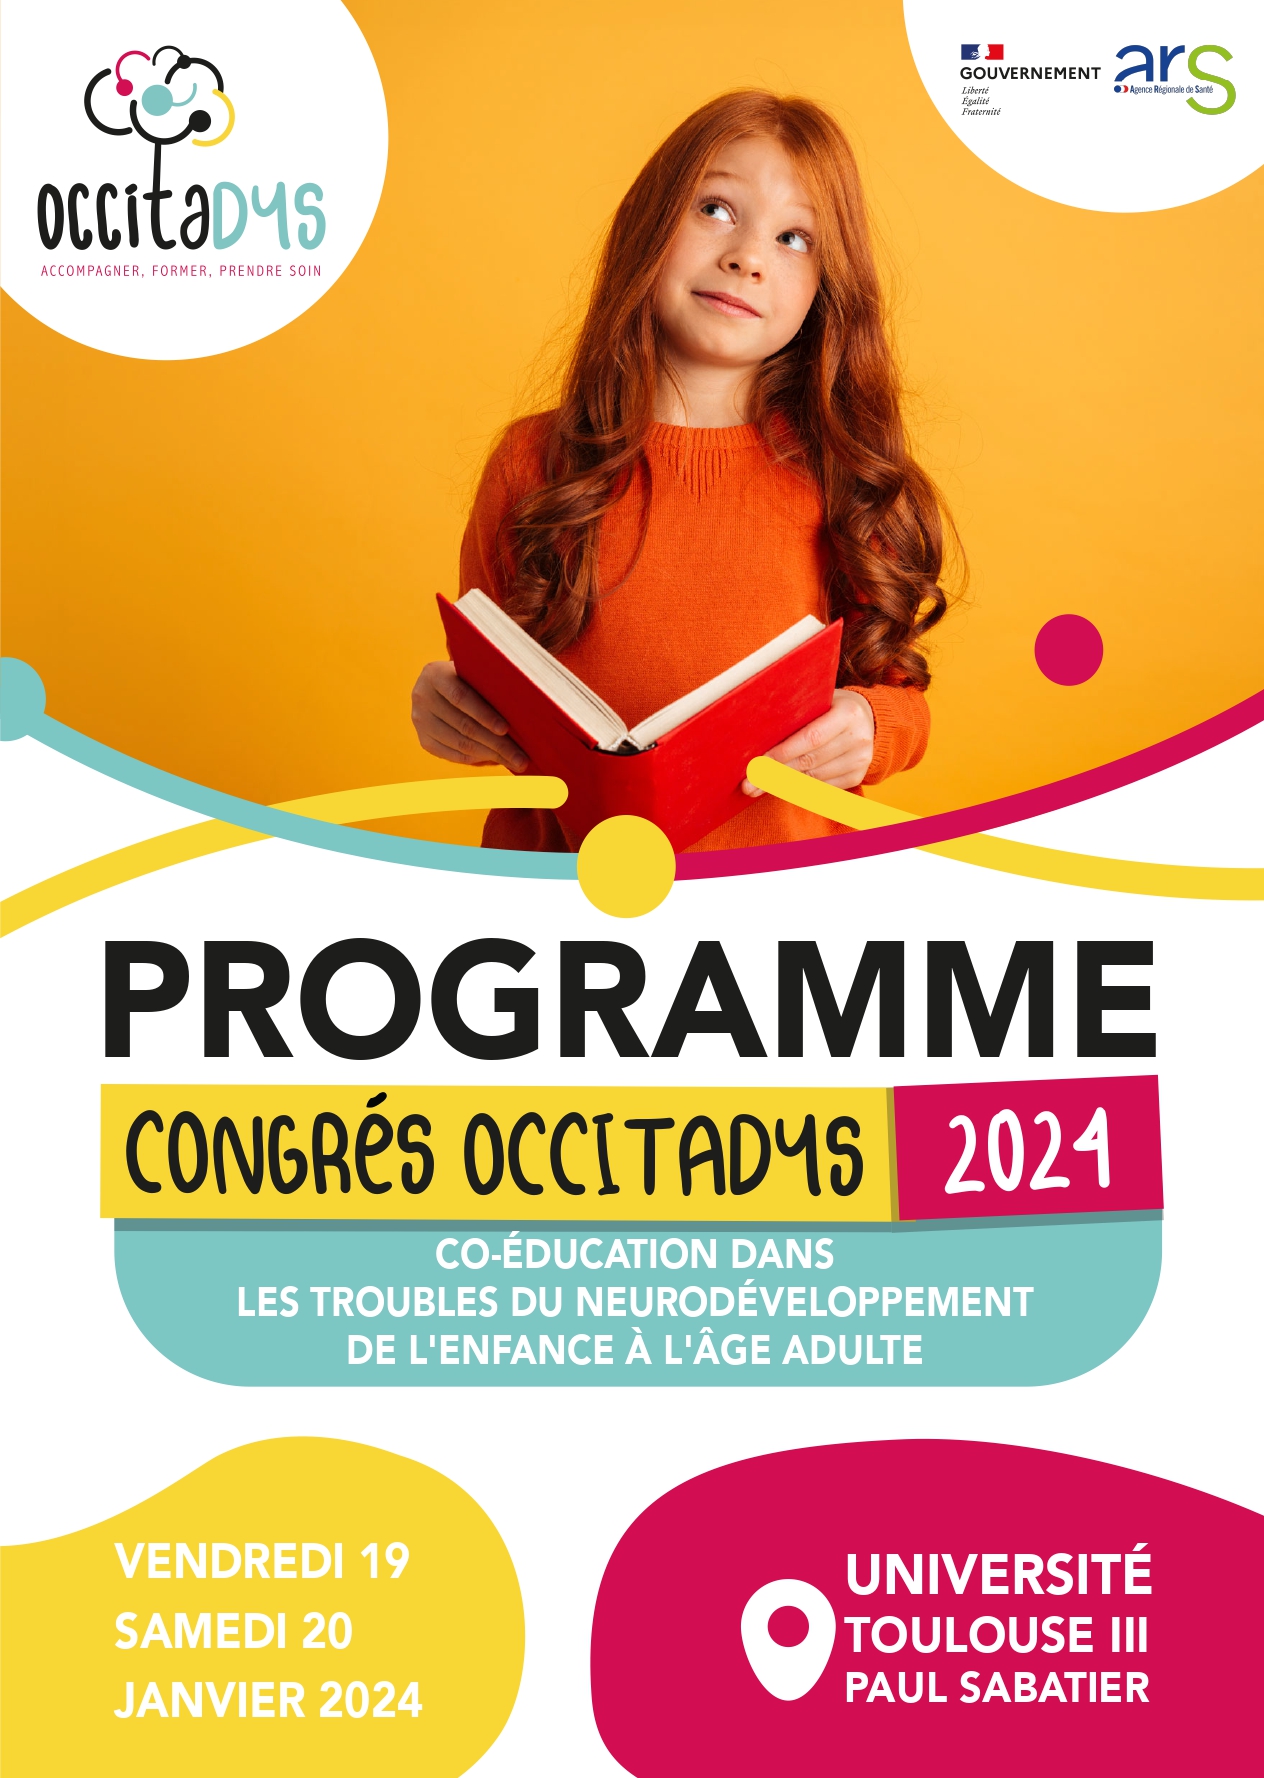 Congrès Occitadys - affiche